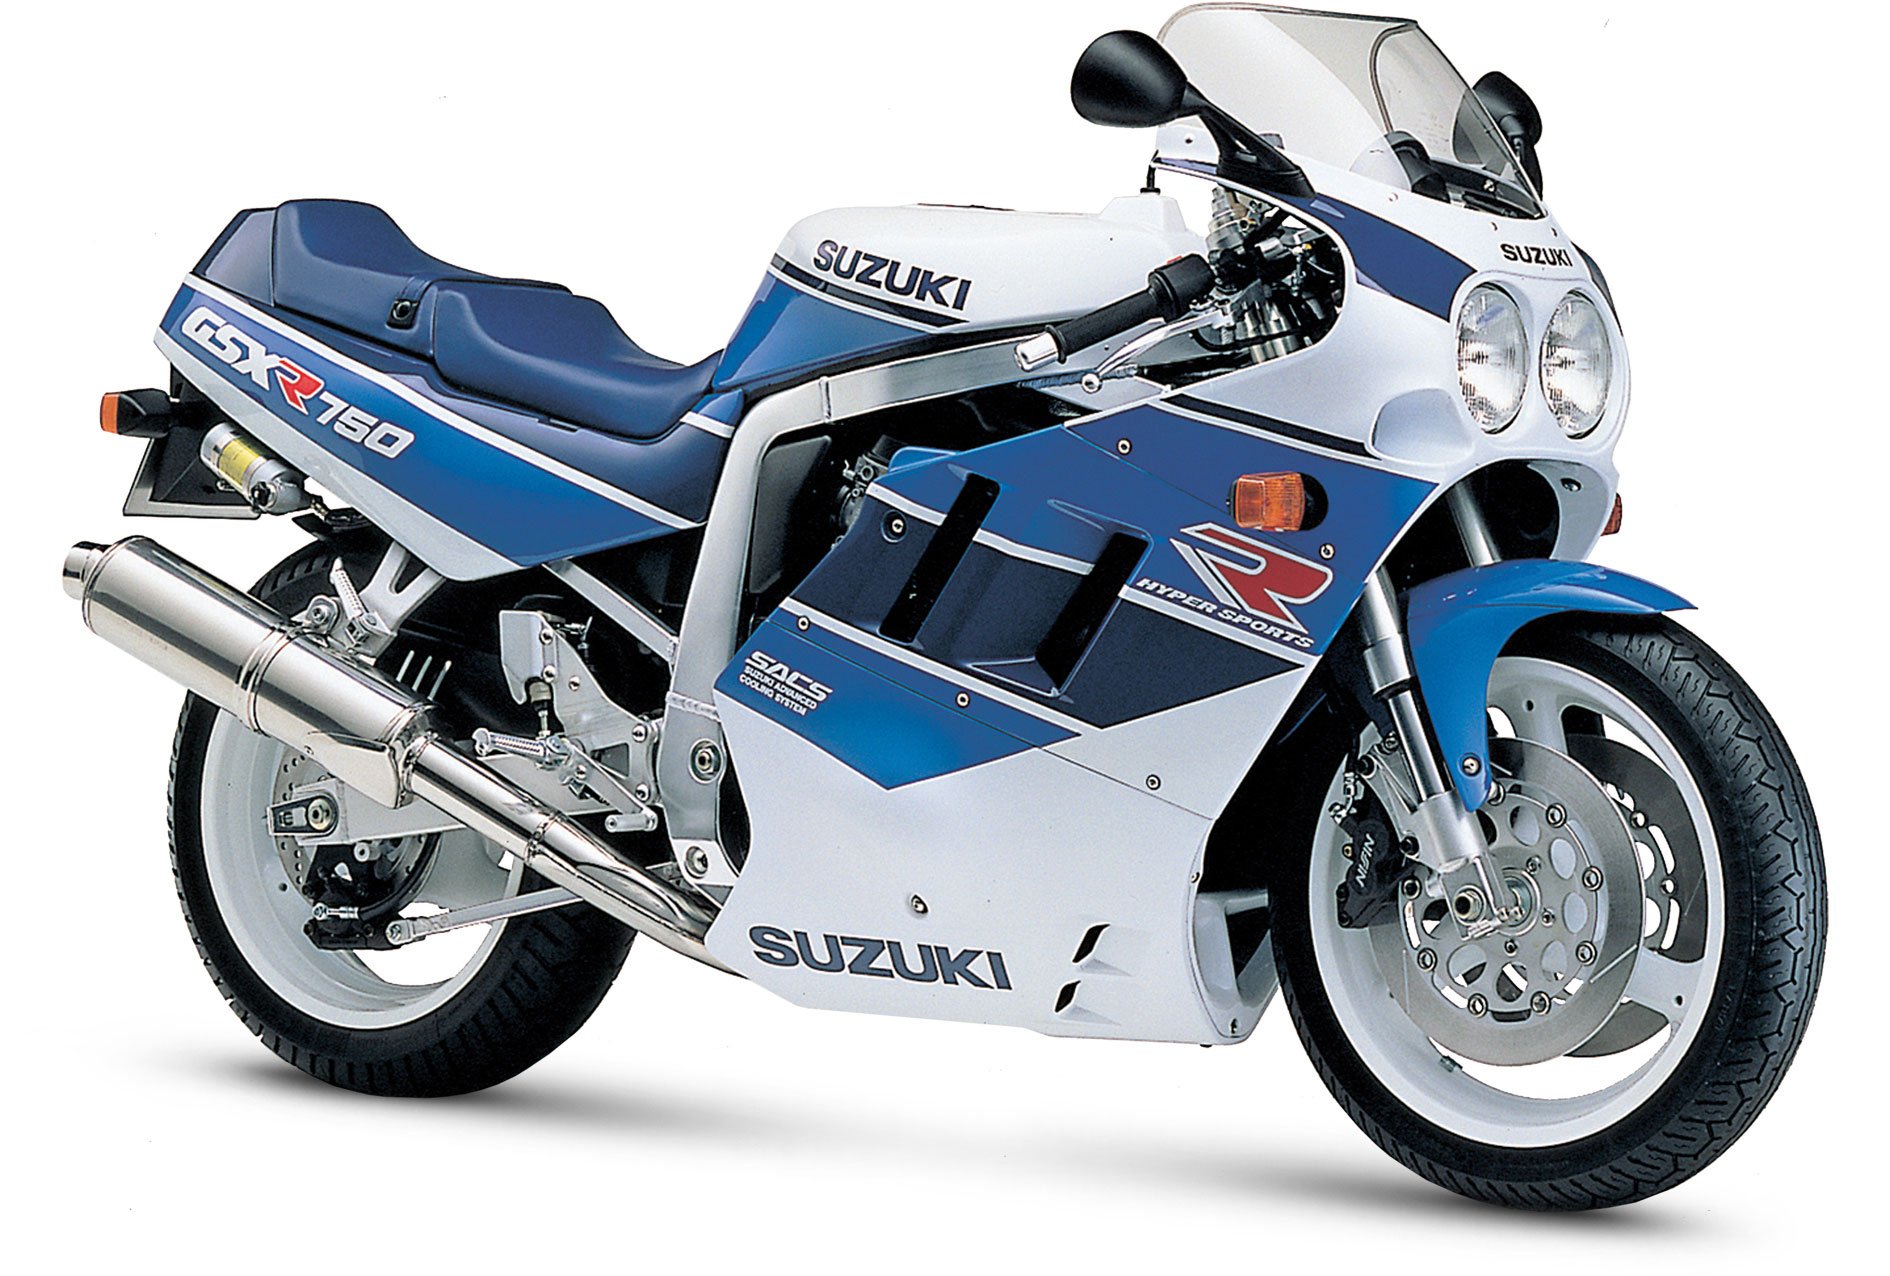 1990, Suzuki, Gsx r750, Motorcycles Wallpaper